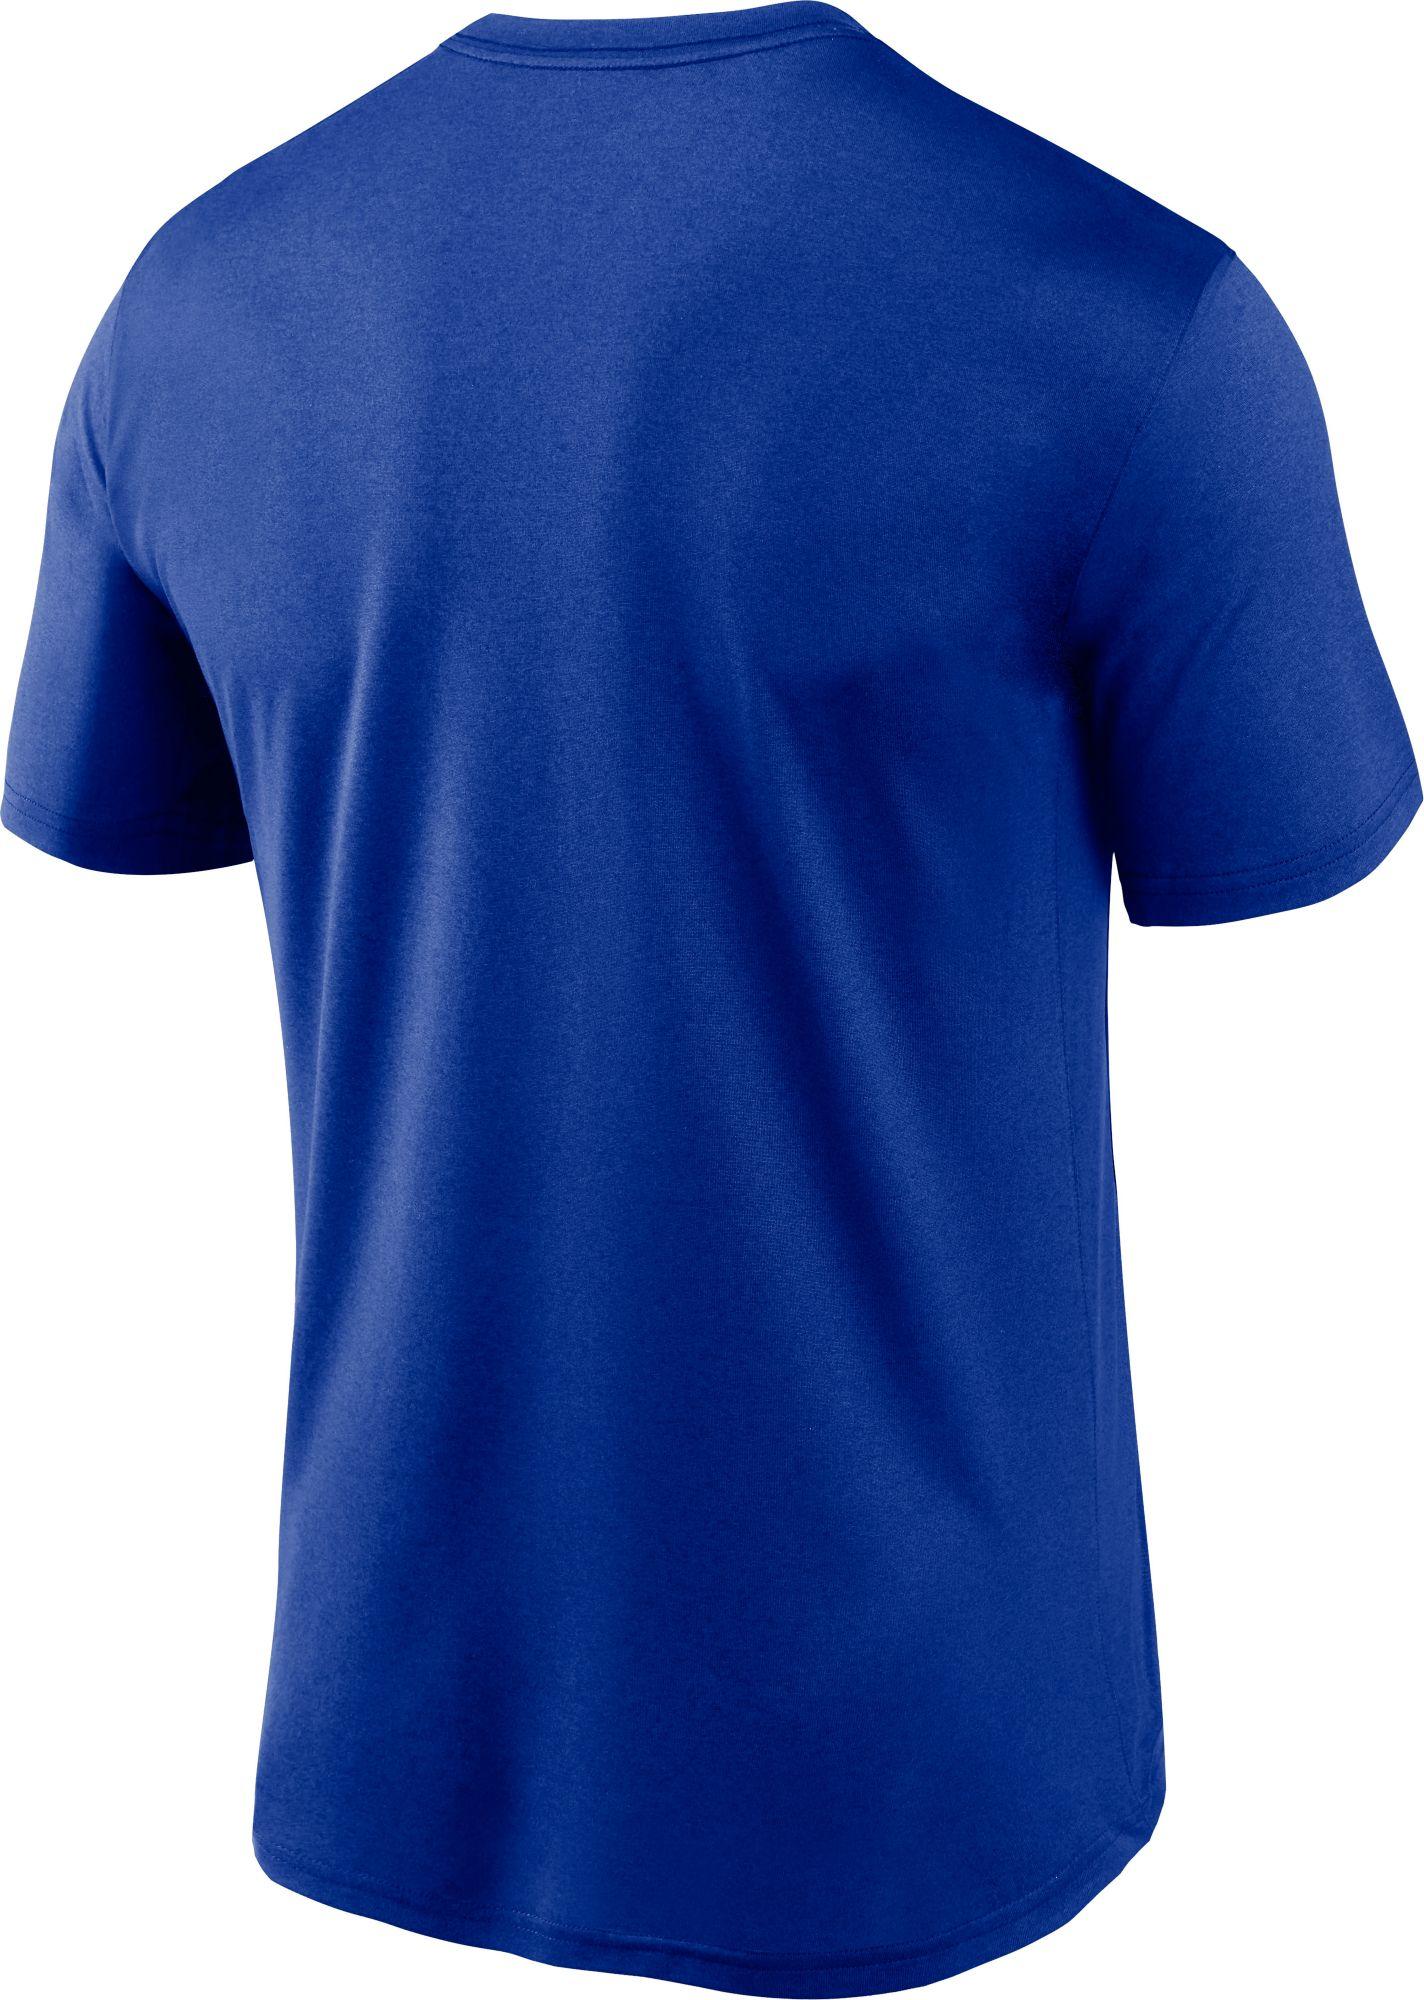 Nike Buffalo Bills Sideline Dri-fit Cotton T-shirt in Blue for Men - Lyst